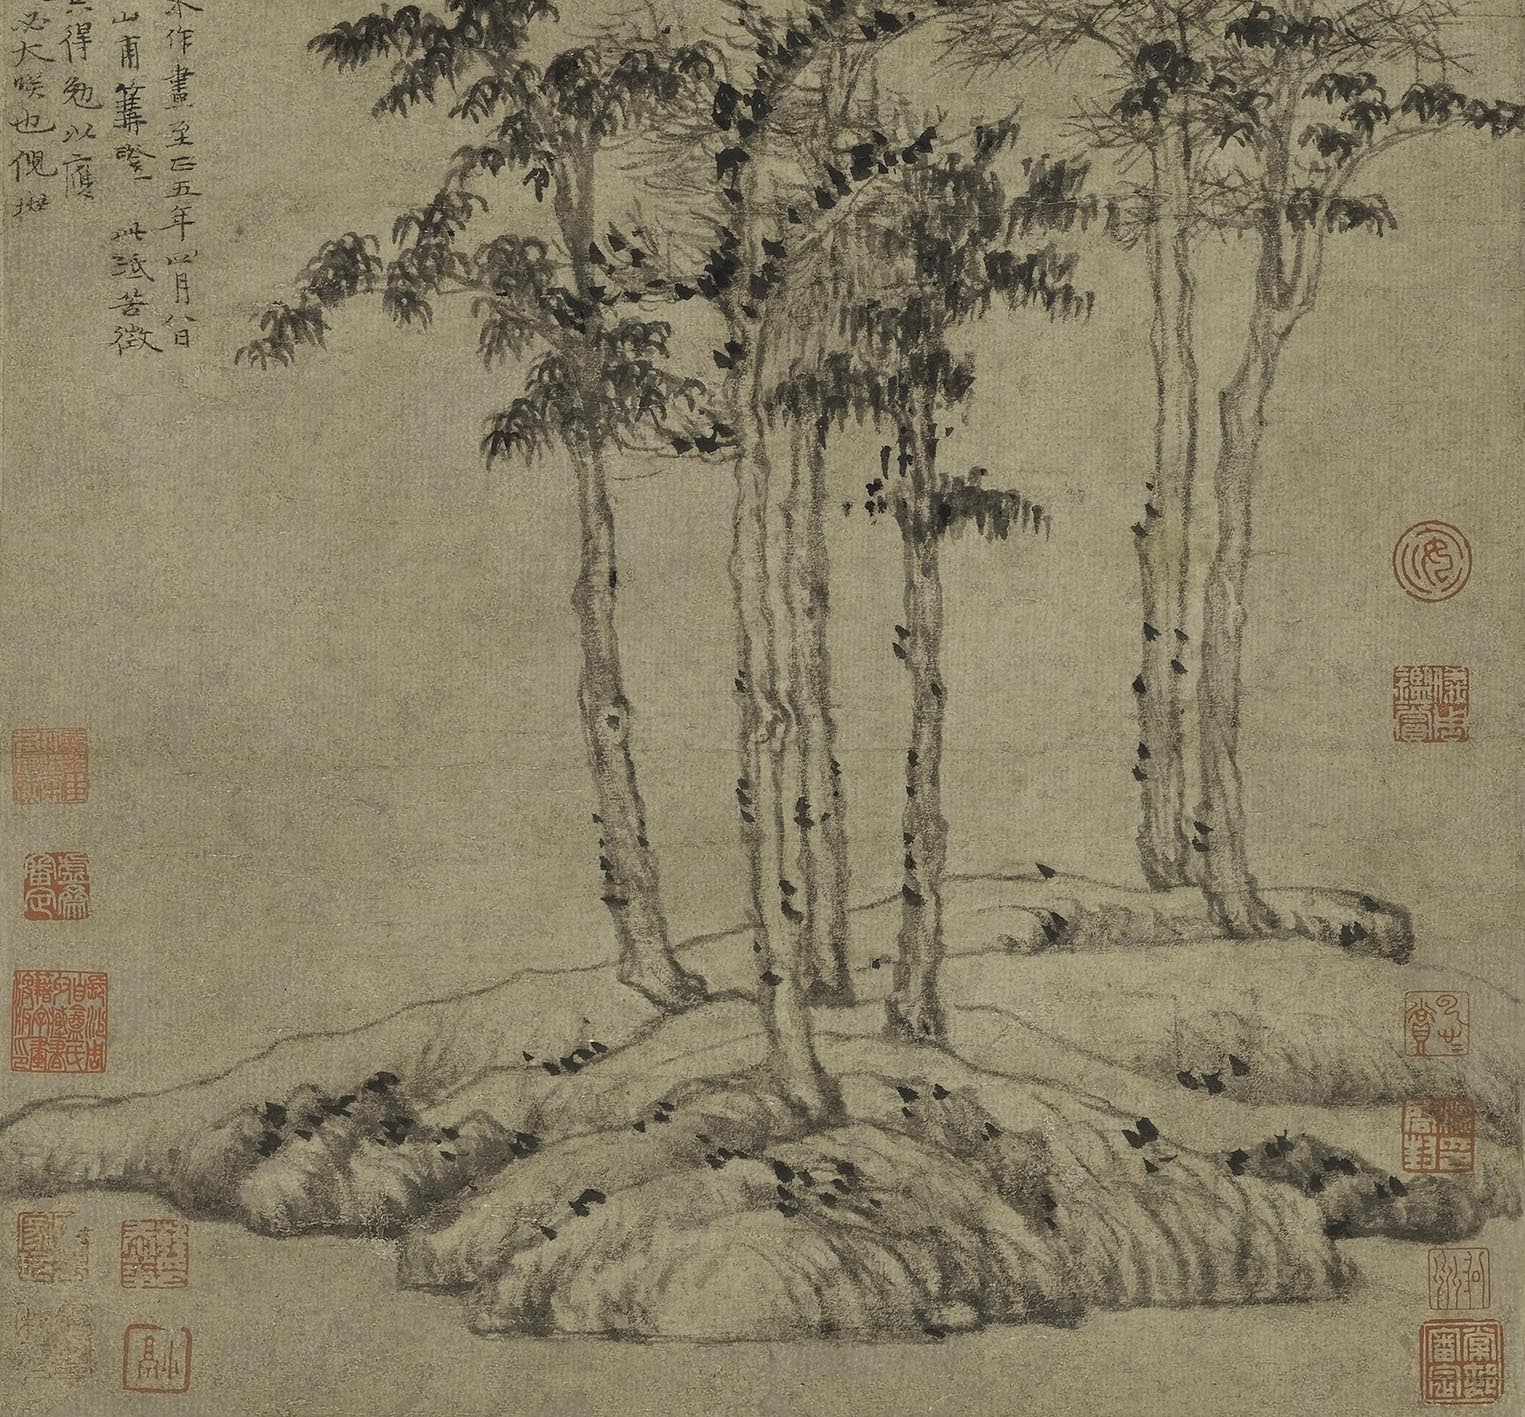 Chinese Antique Art Painting 元 倪瓒 六君子图轴 Yuan Ni Zan Liu Jun Zi